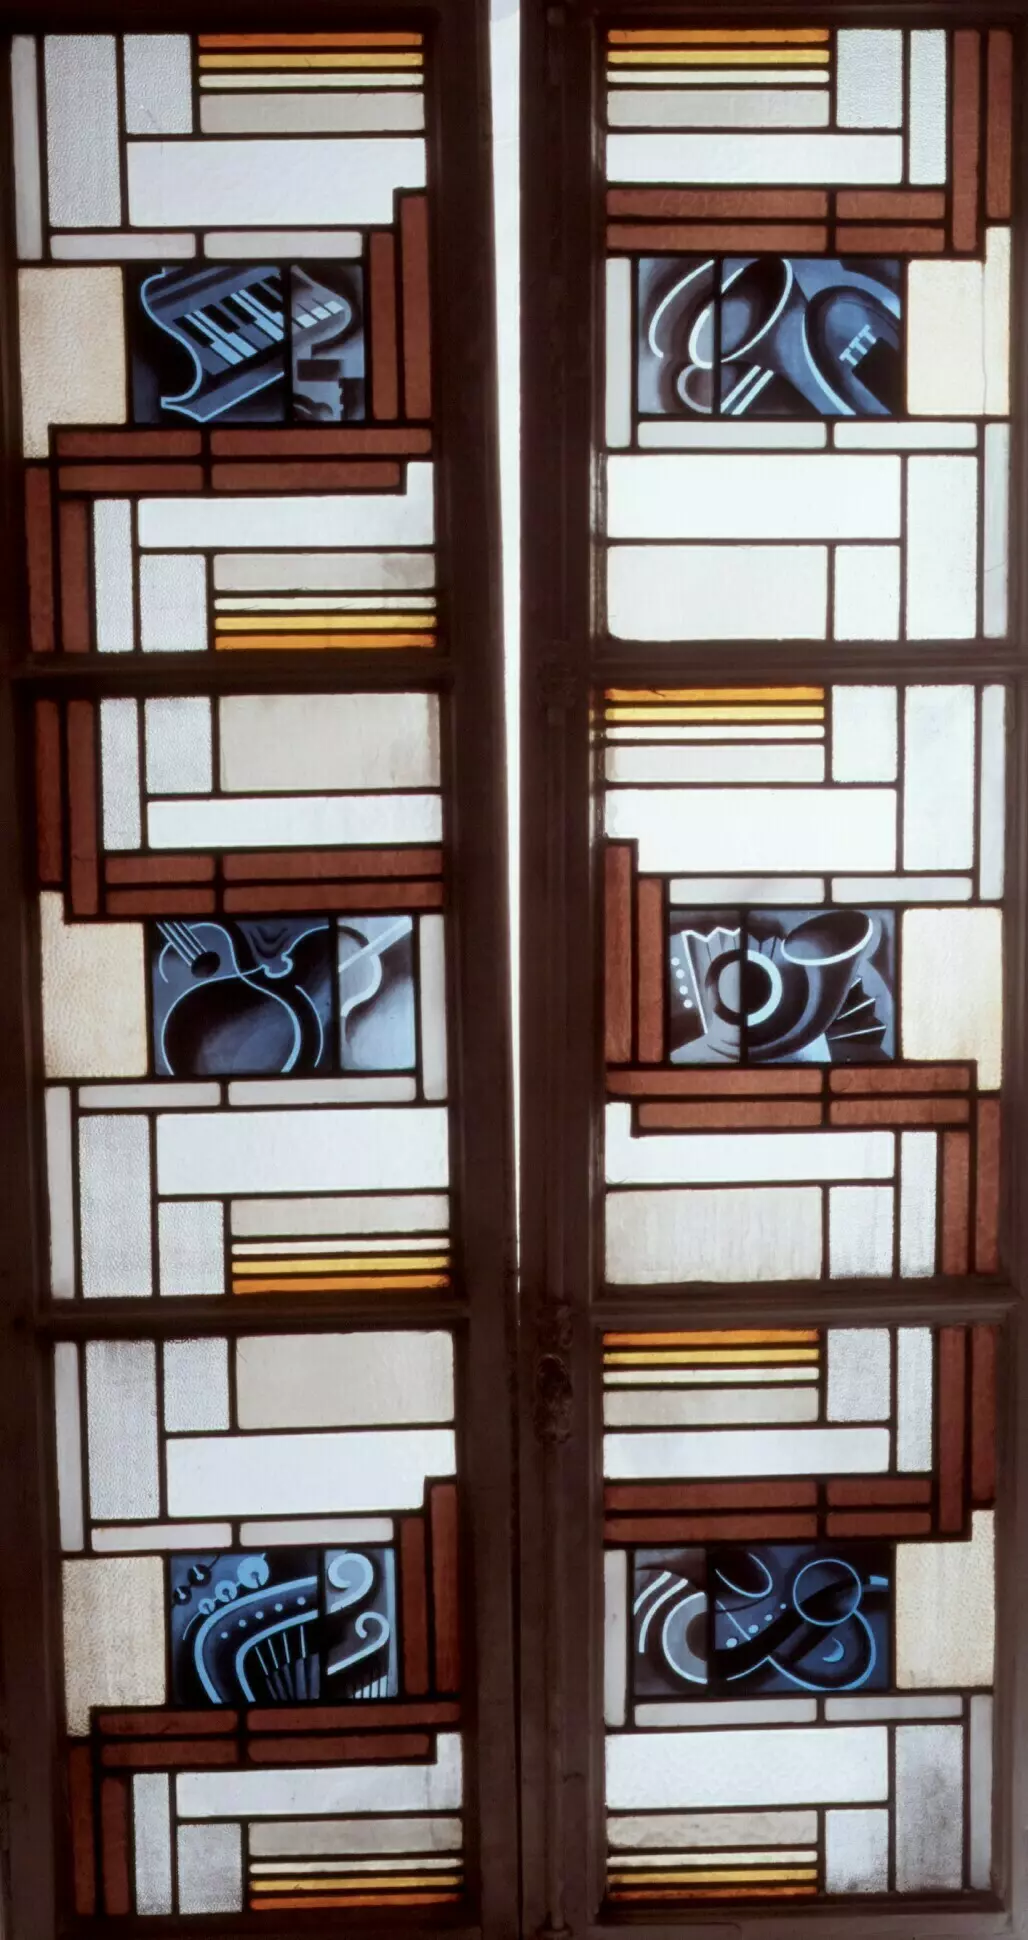 Rassemblements-Crédits : La musique / Verres et plomb, 213 × 115 cm Limoges, © musée des Beaux-Arts, inv. 2005.6.1 (affectation de la Ville de Limoges)